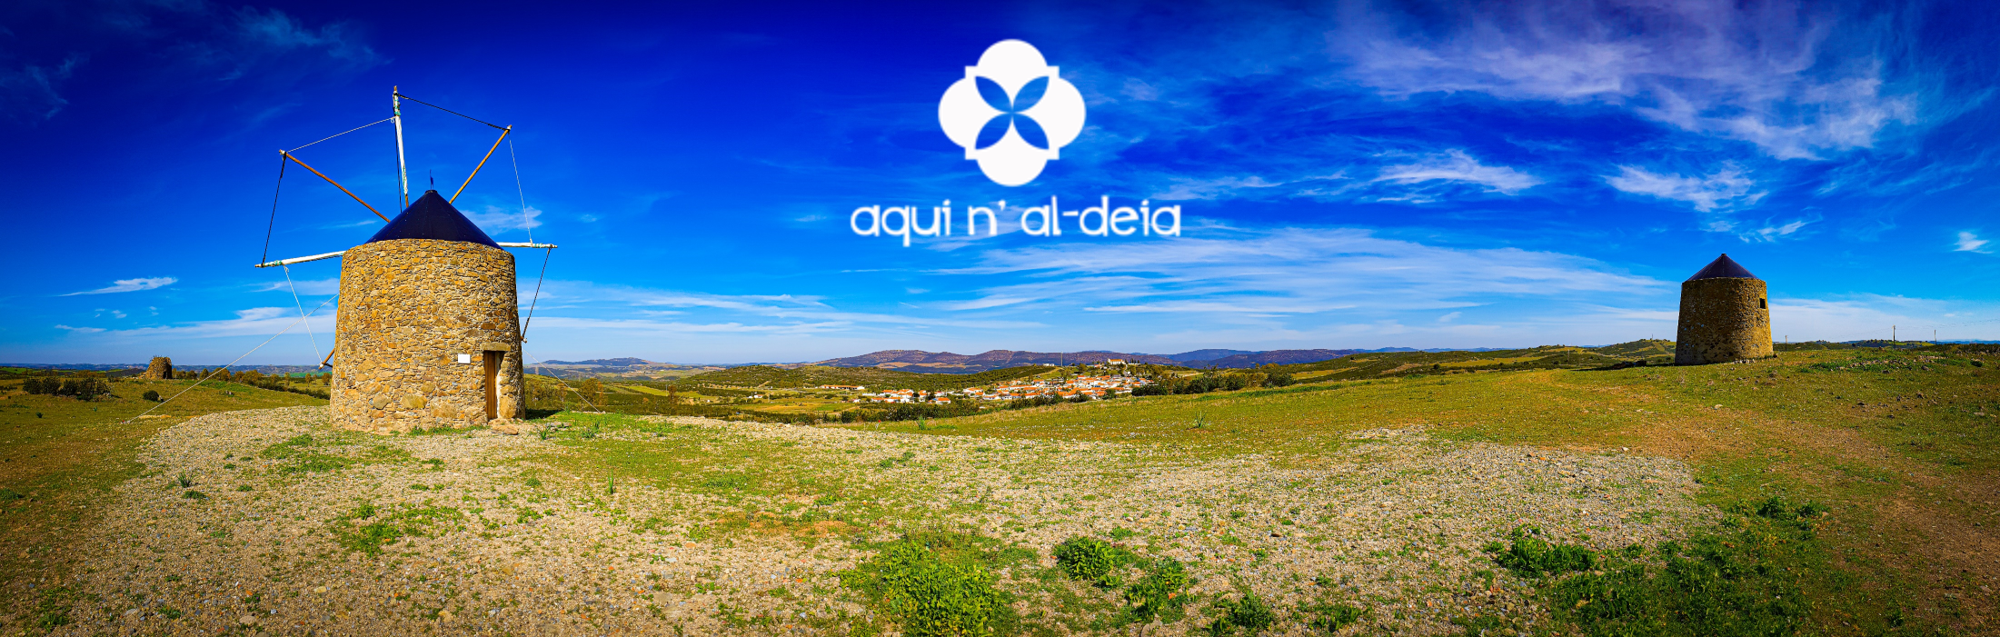 Aquinaldeia - Turismo Rural